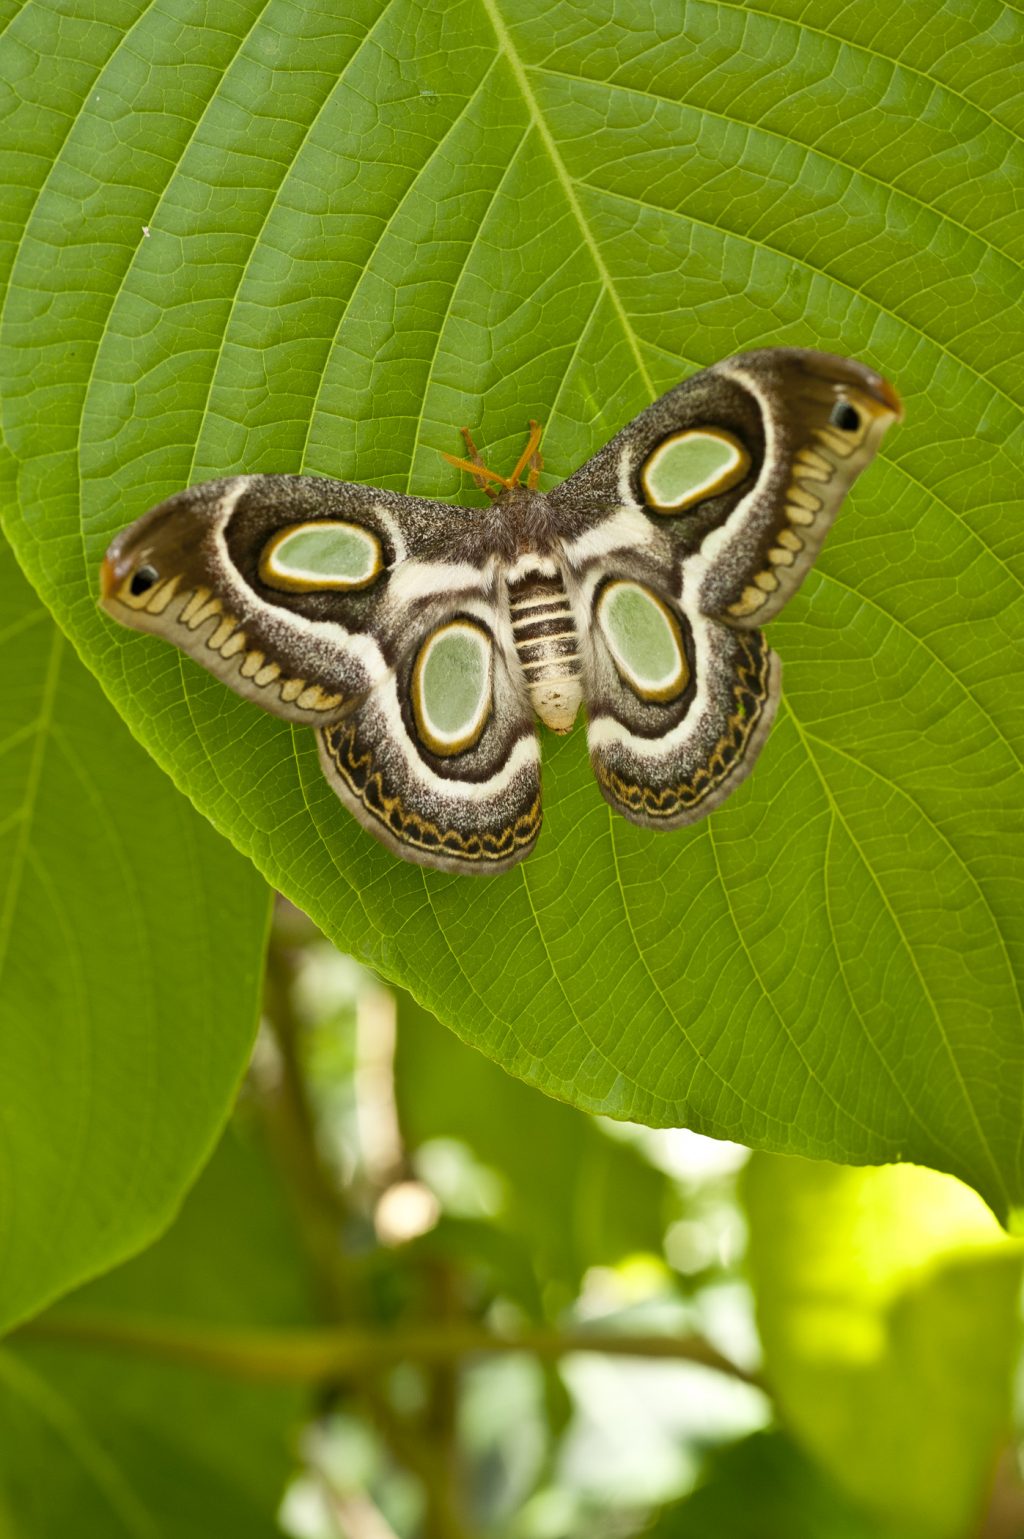 moth on a green leaf